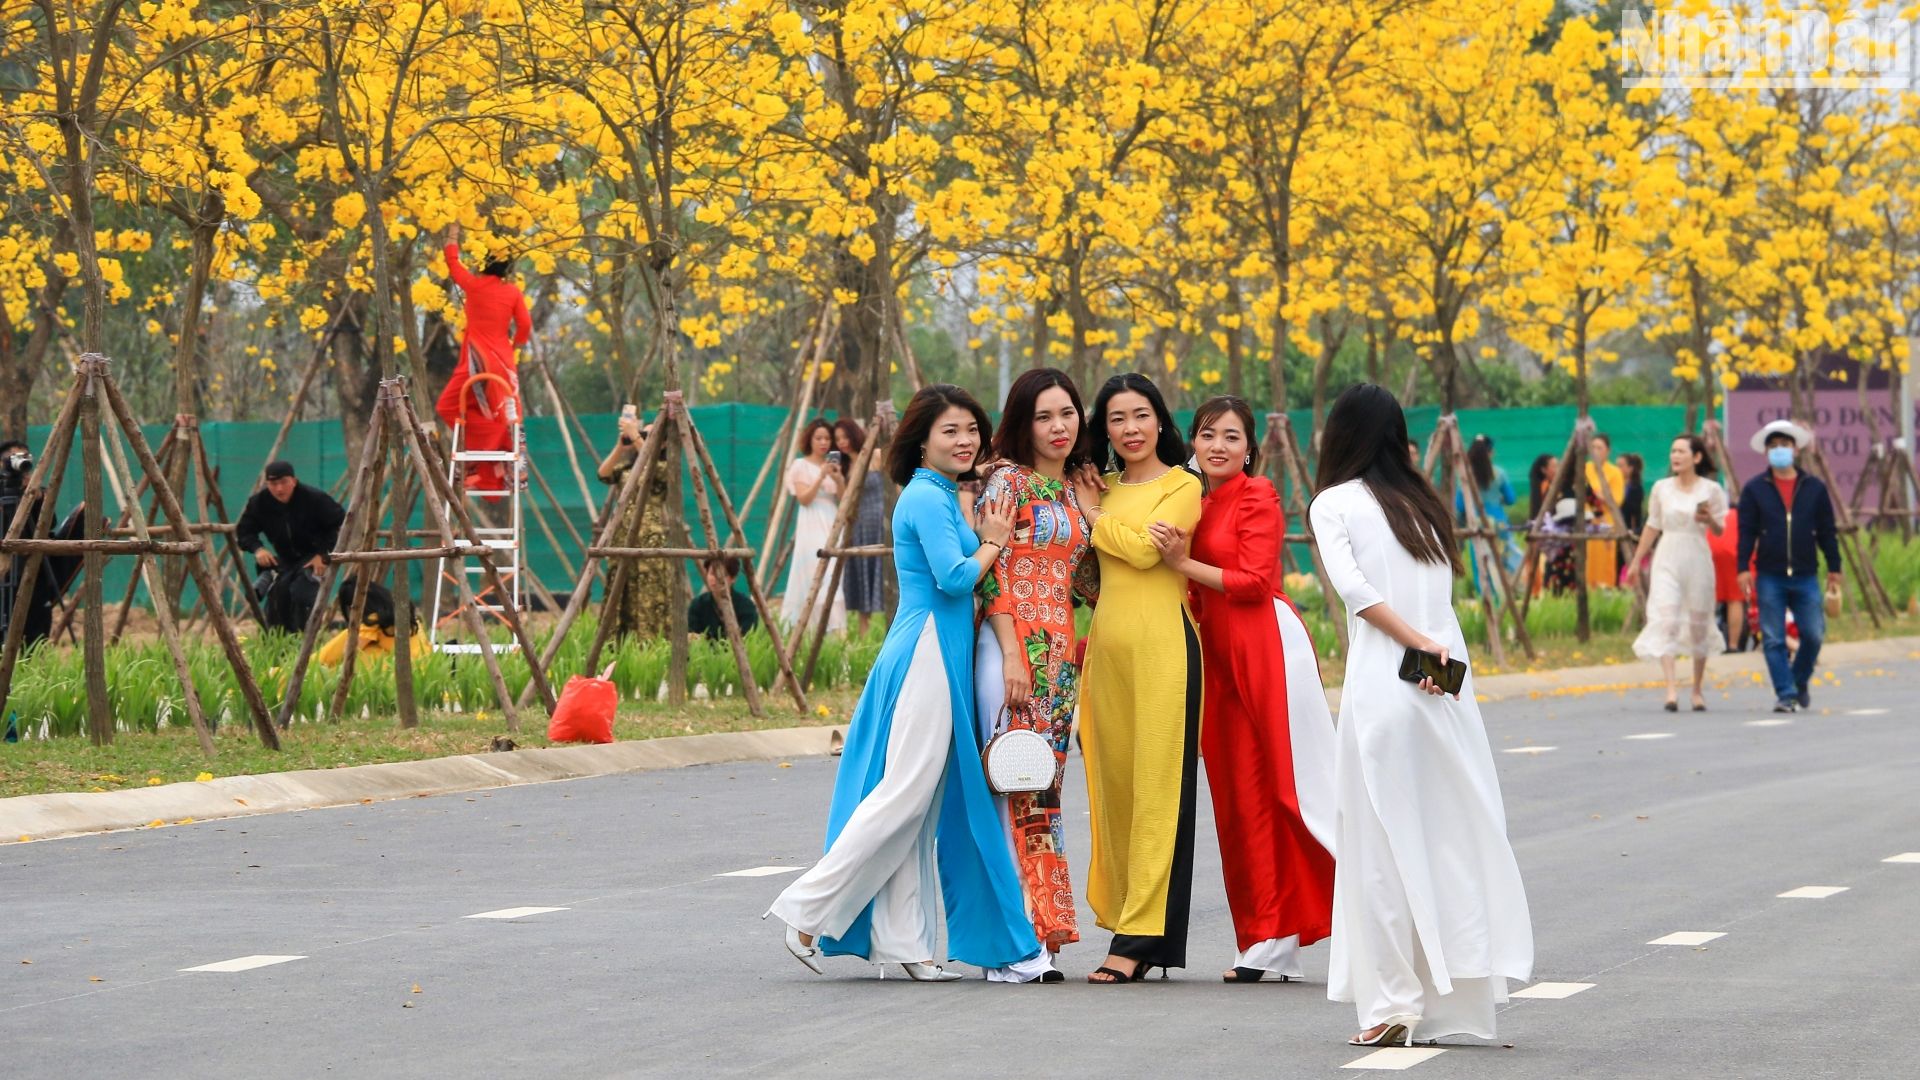 Một cung đường trong khu đô thị Park City (Hà Đông, Hà Nội) sở hữu rất nhiều cây hoa phong linh đang nở rộ, thu hút nhiều người dân tới chụp ảnh và vui chơi.